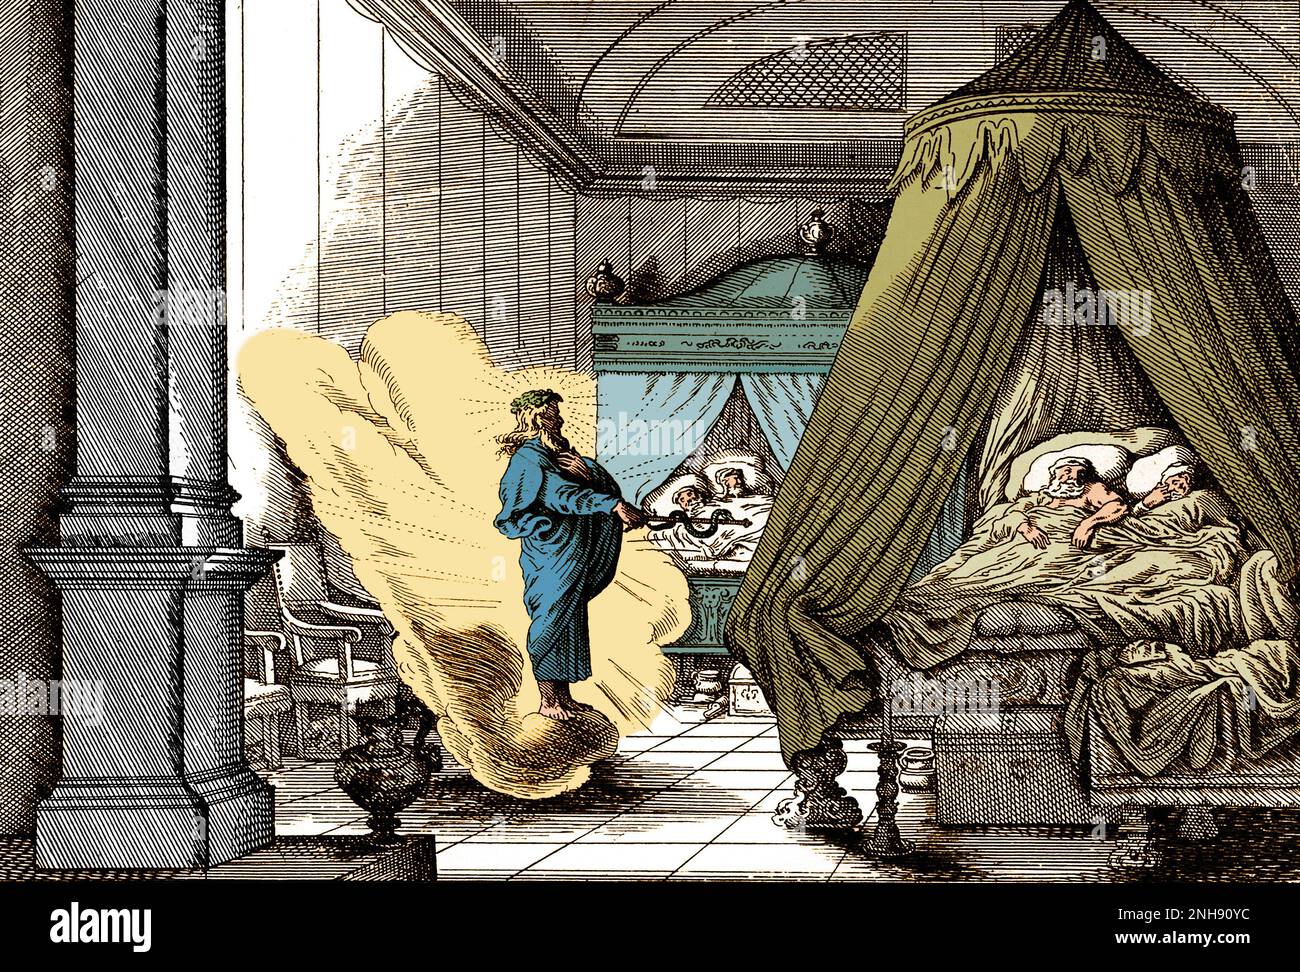 Asklepius, griechischer gott der Medizin, kommt nachts in der Schlafkammer einiger antiker griechischer Bewohner von Epidaurus an. Gefärbt. Stockfoto